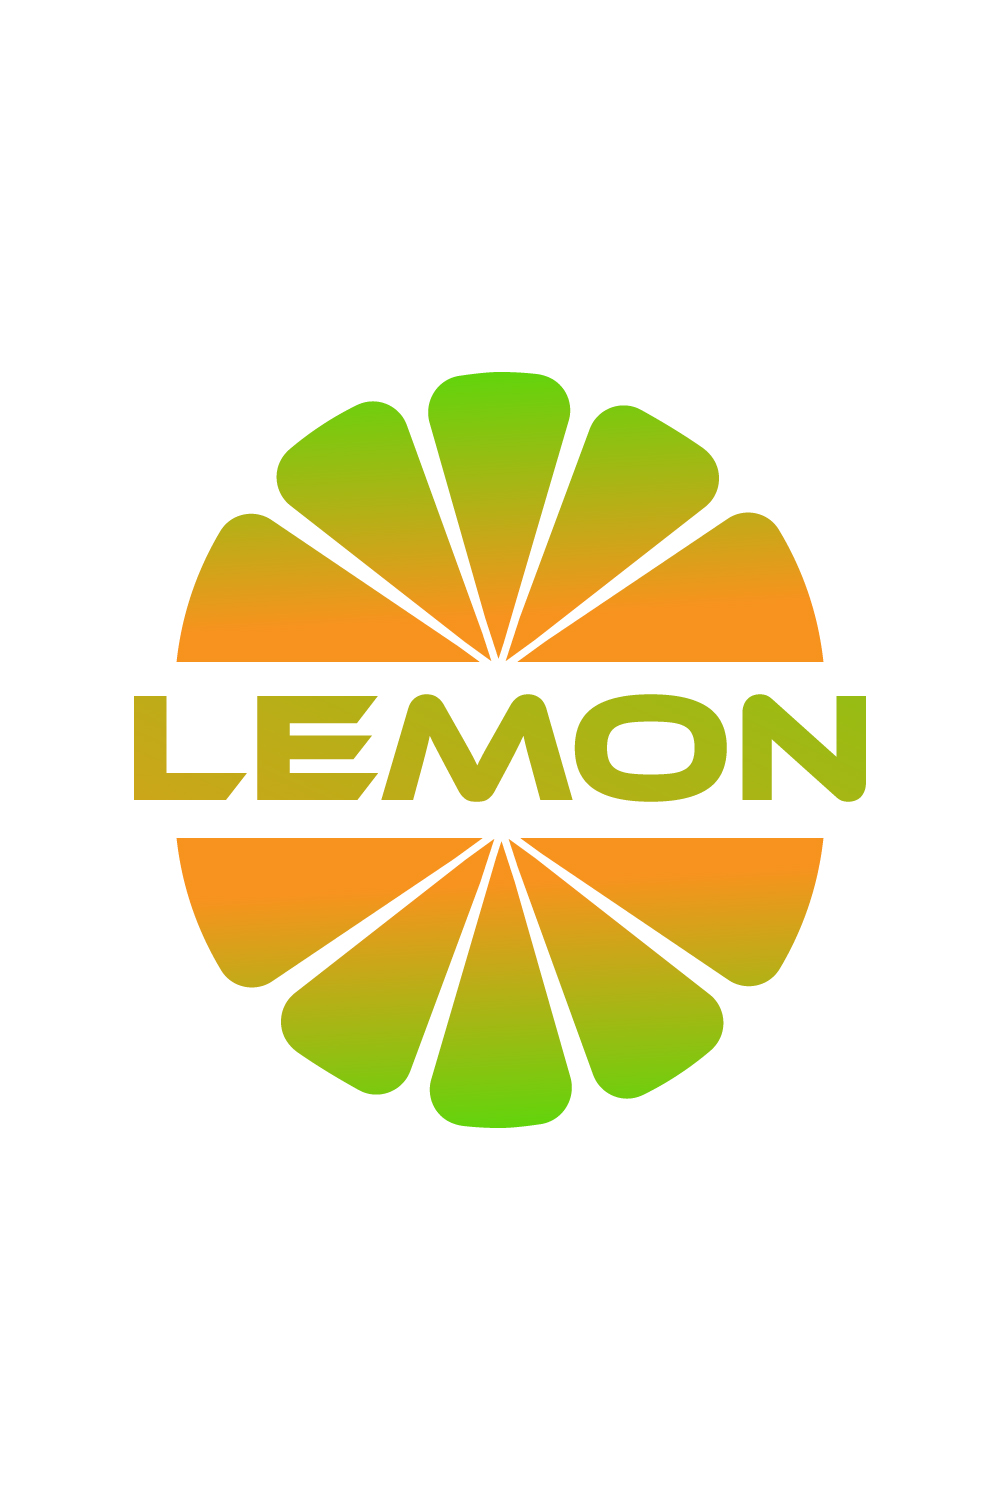 Lemon logo design vector images lemon Fresh Fruit logo template icon design pinterest preview image.